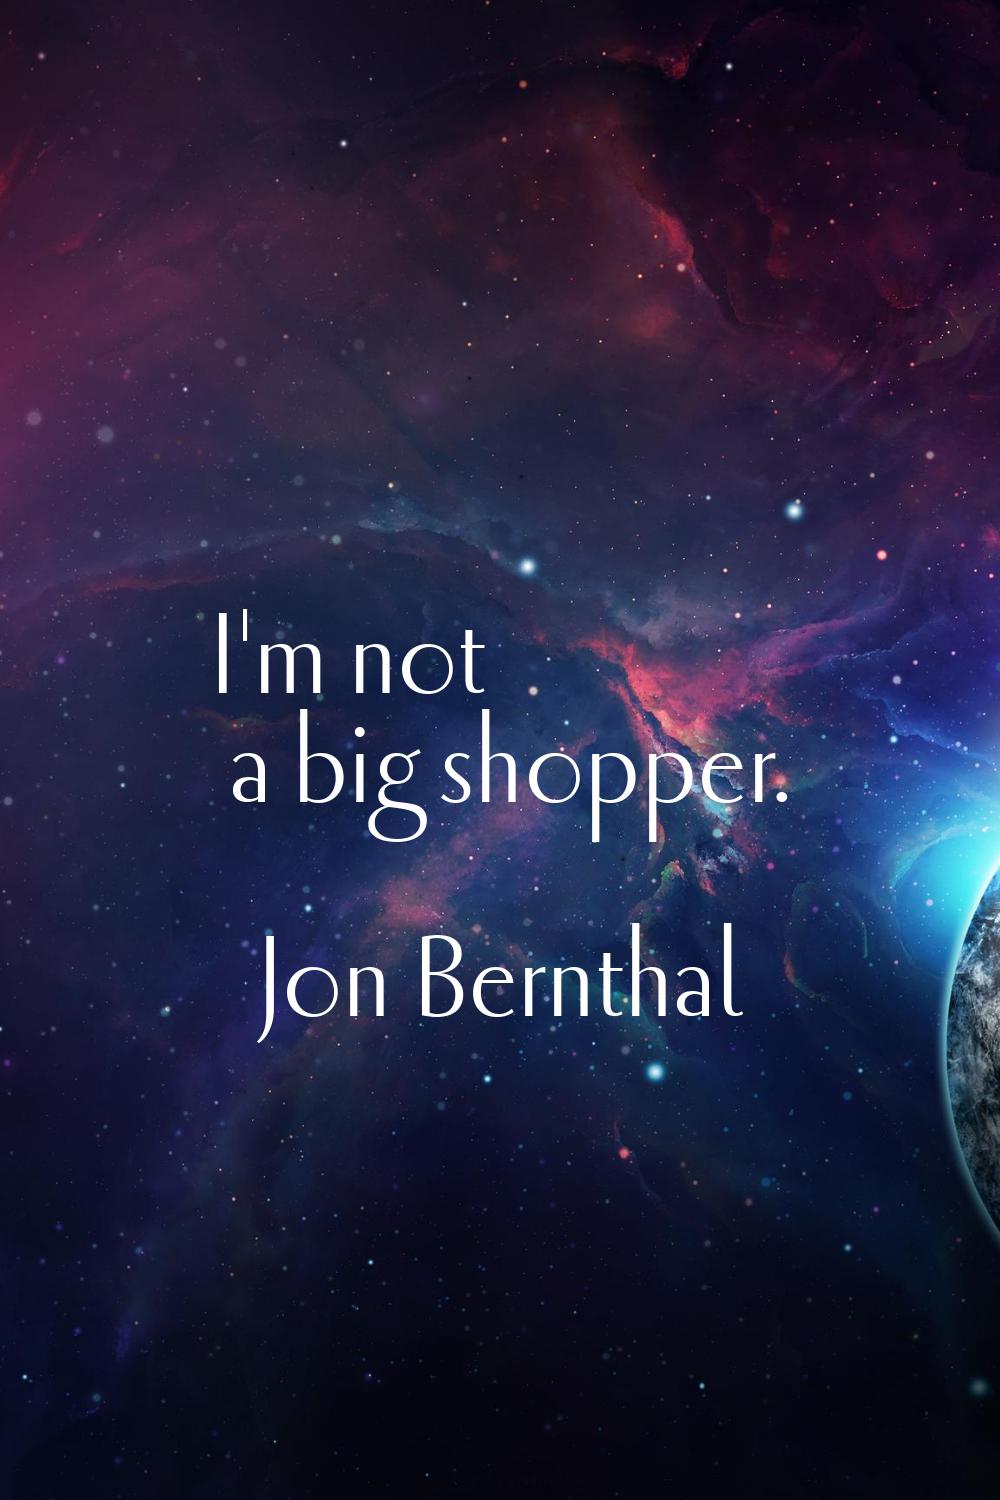 I'm not a big shopper.